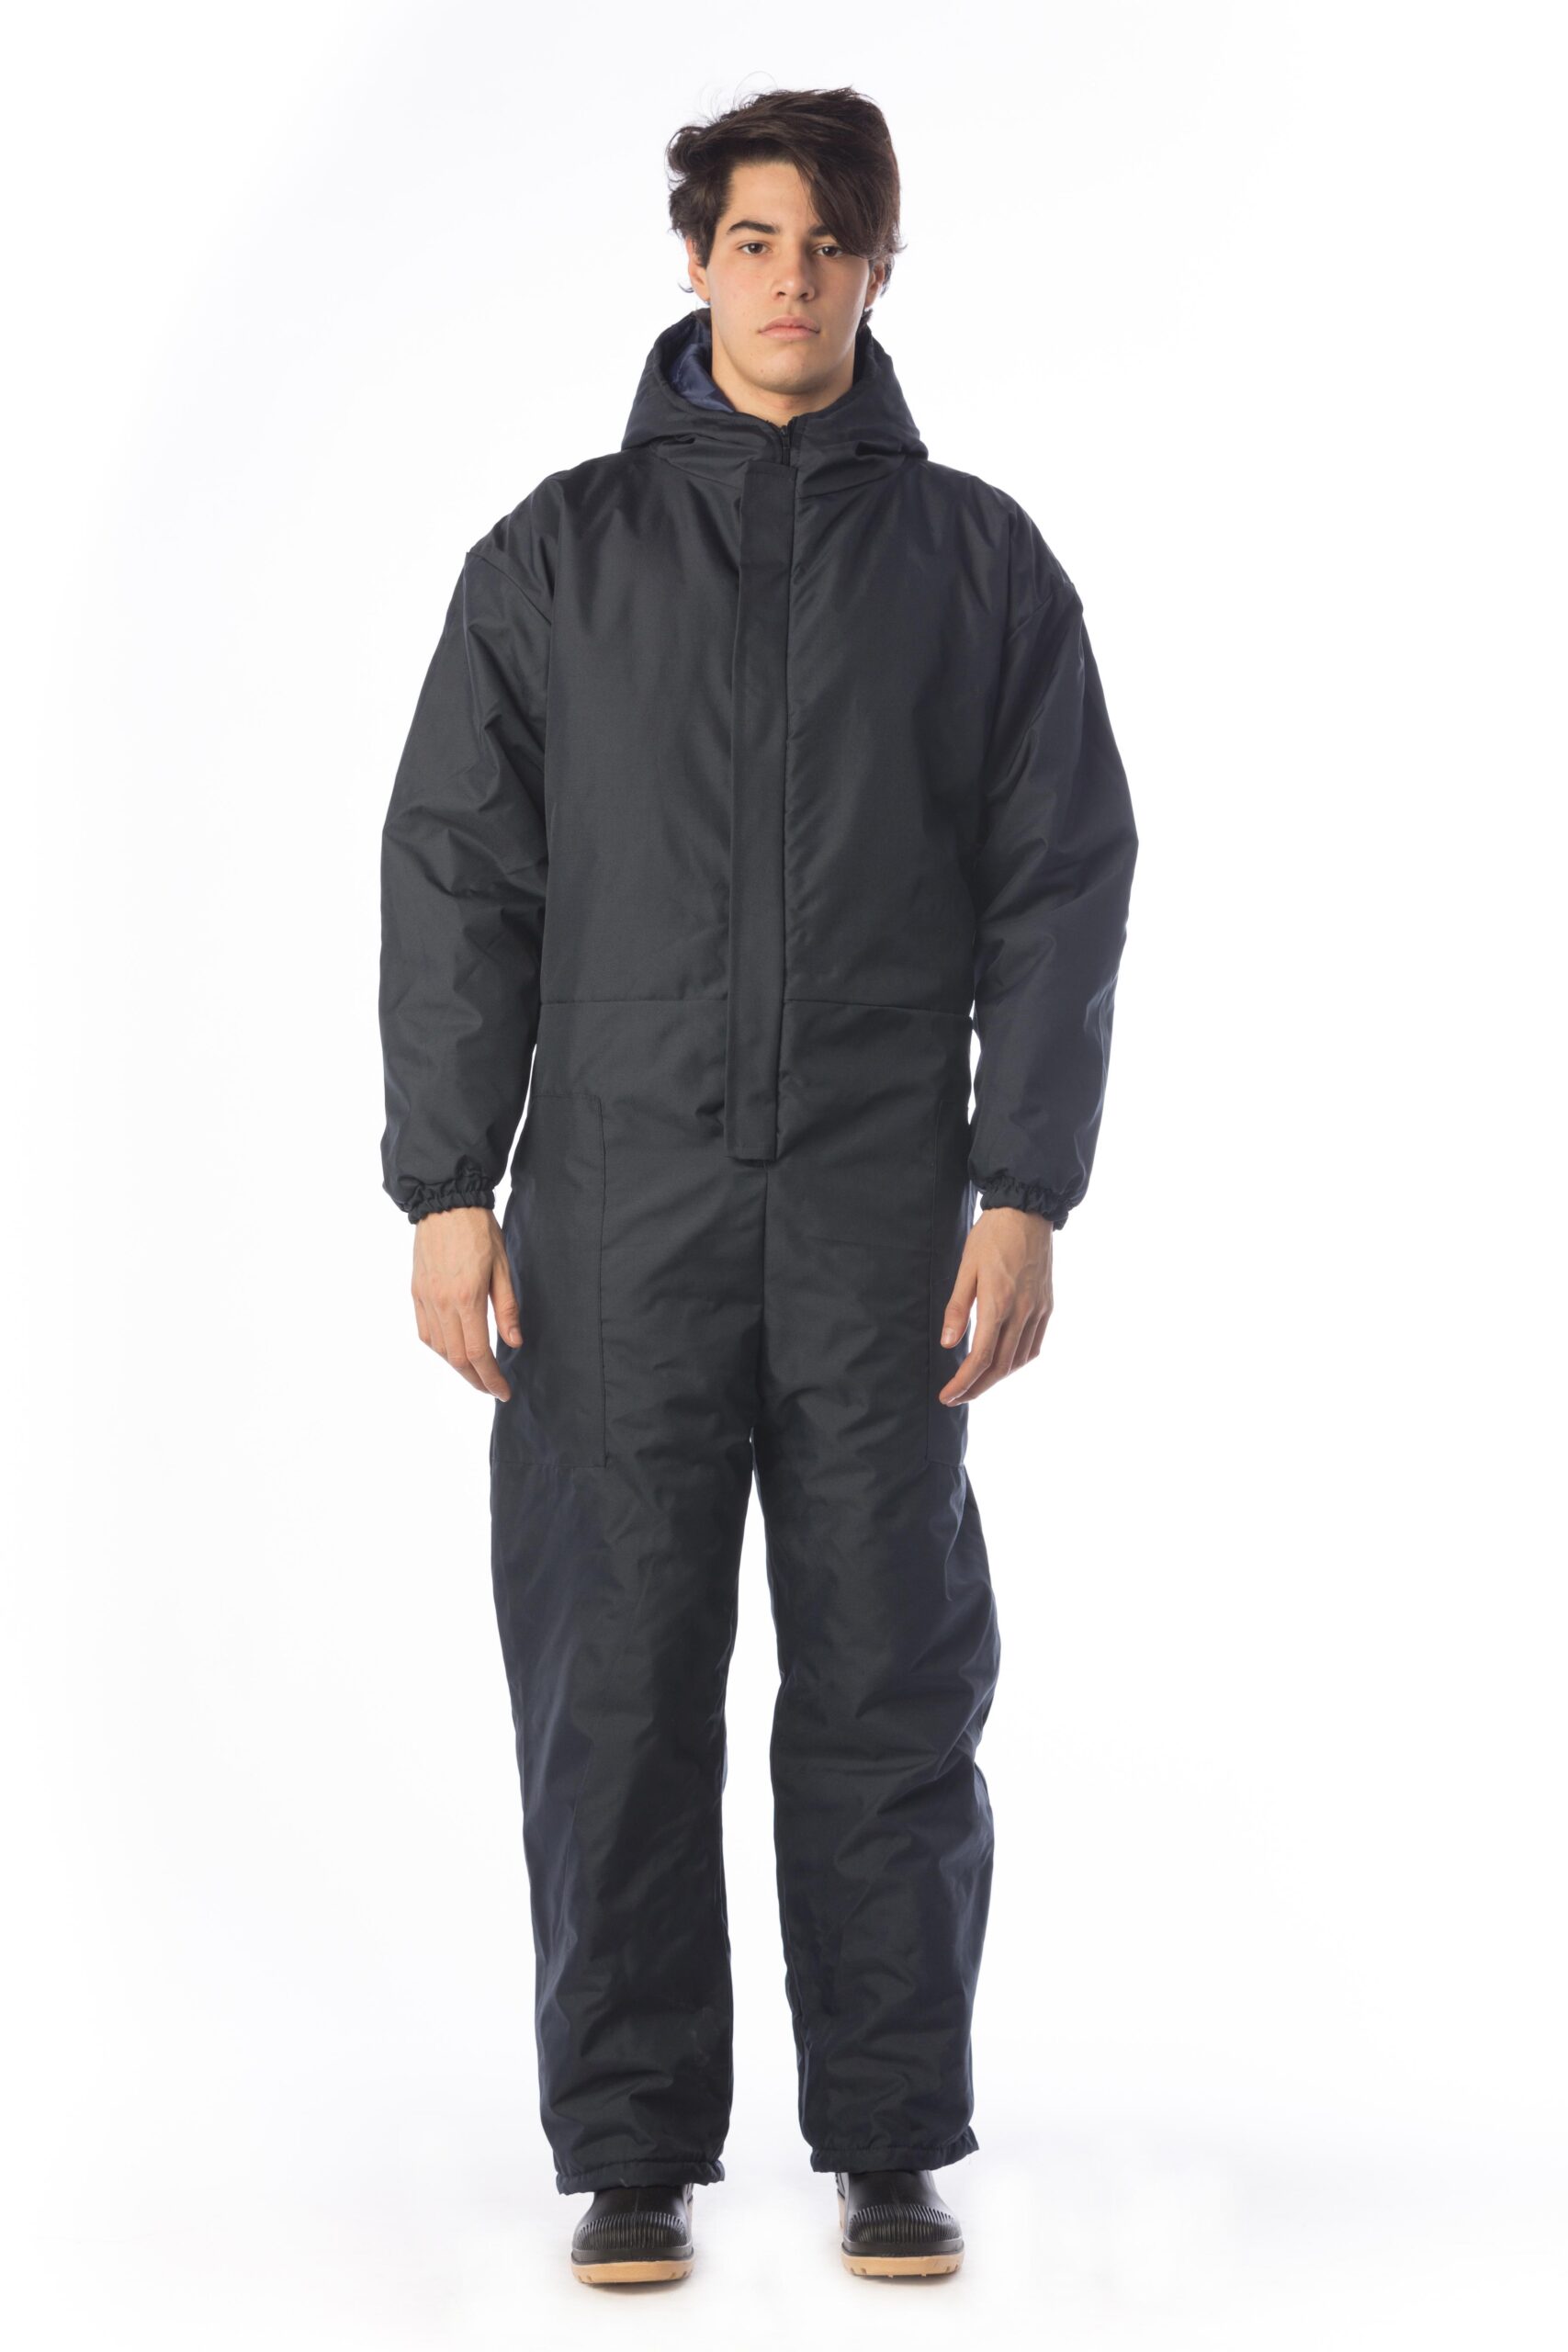 Peto de trabajo - STFC111 - Kaiwaka Clothing Ltd - para hombre